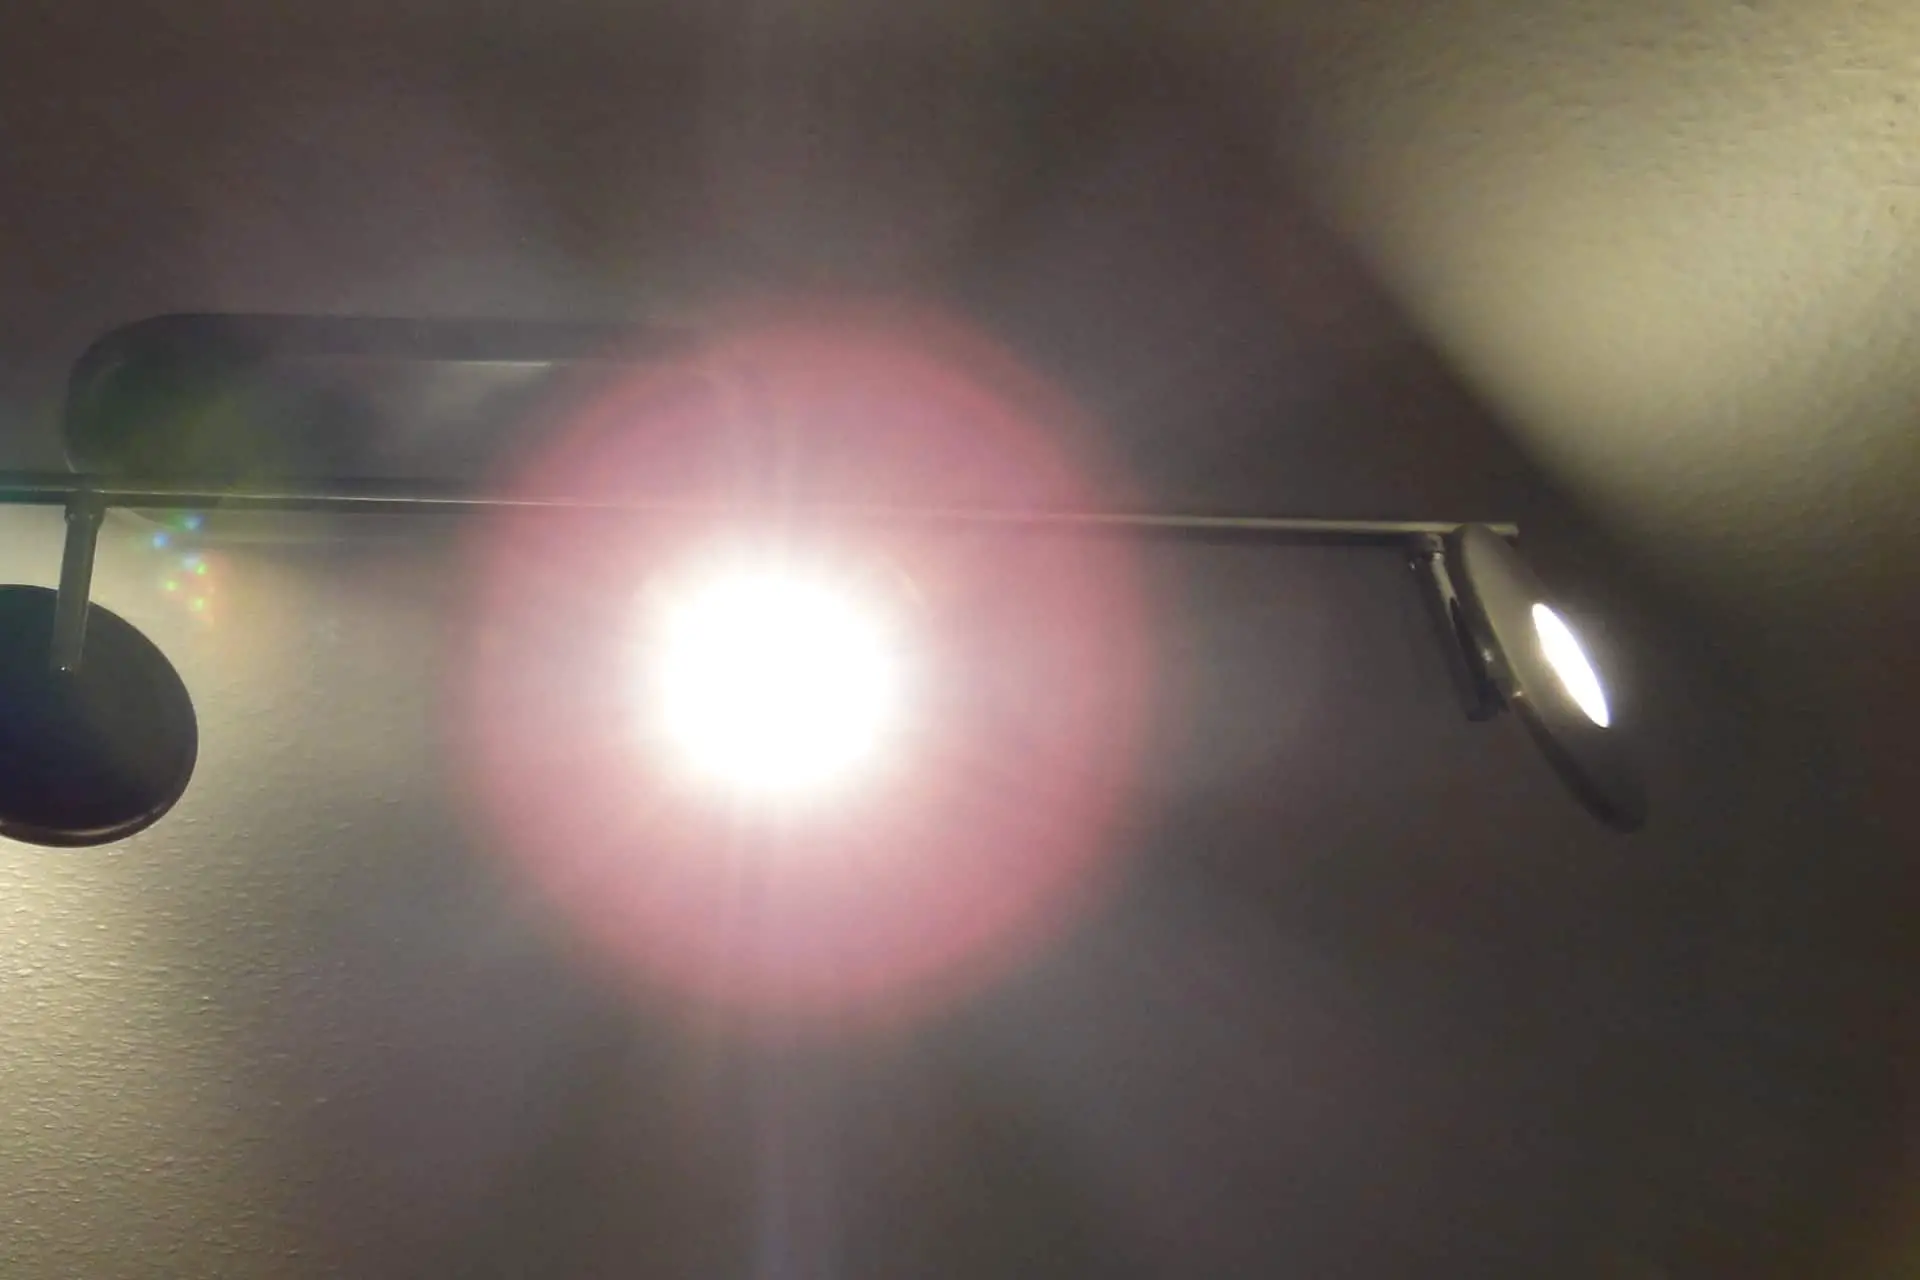 LED Lampe ist zu hell und blendet - Wie dunkler machen? 